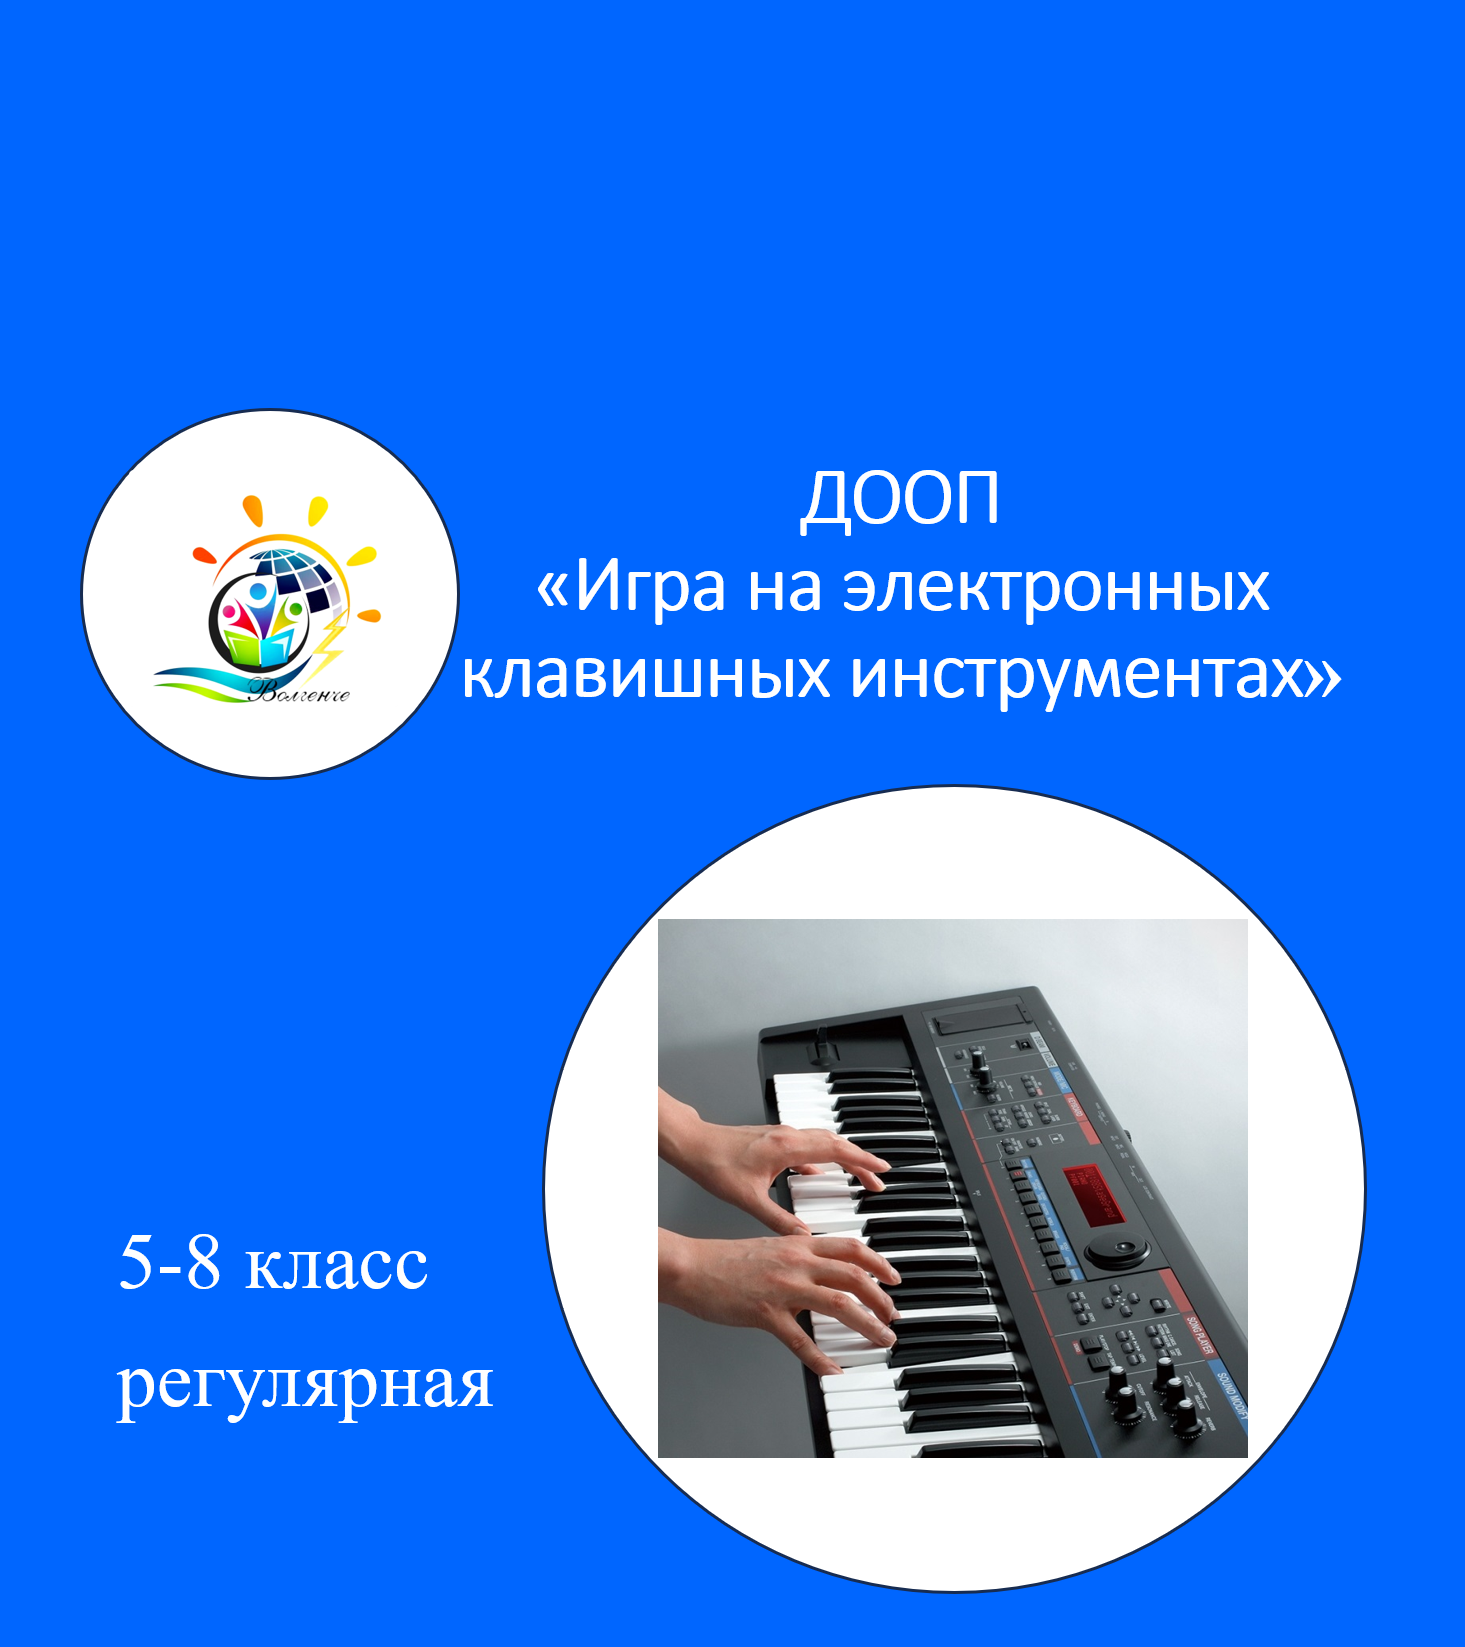 ДООП «Игра на электронных клавишных инструментах»